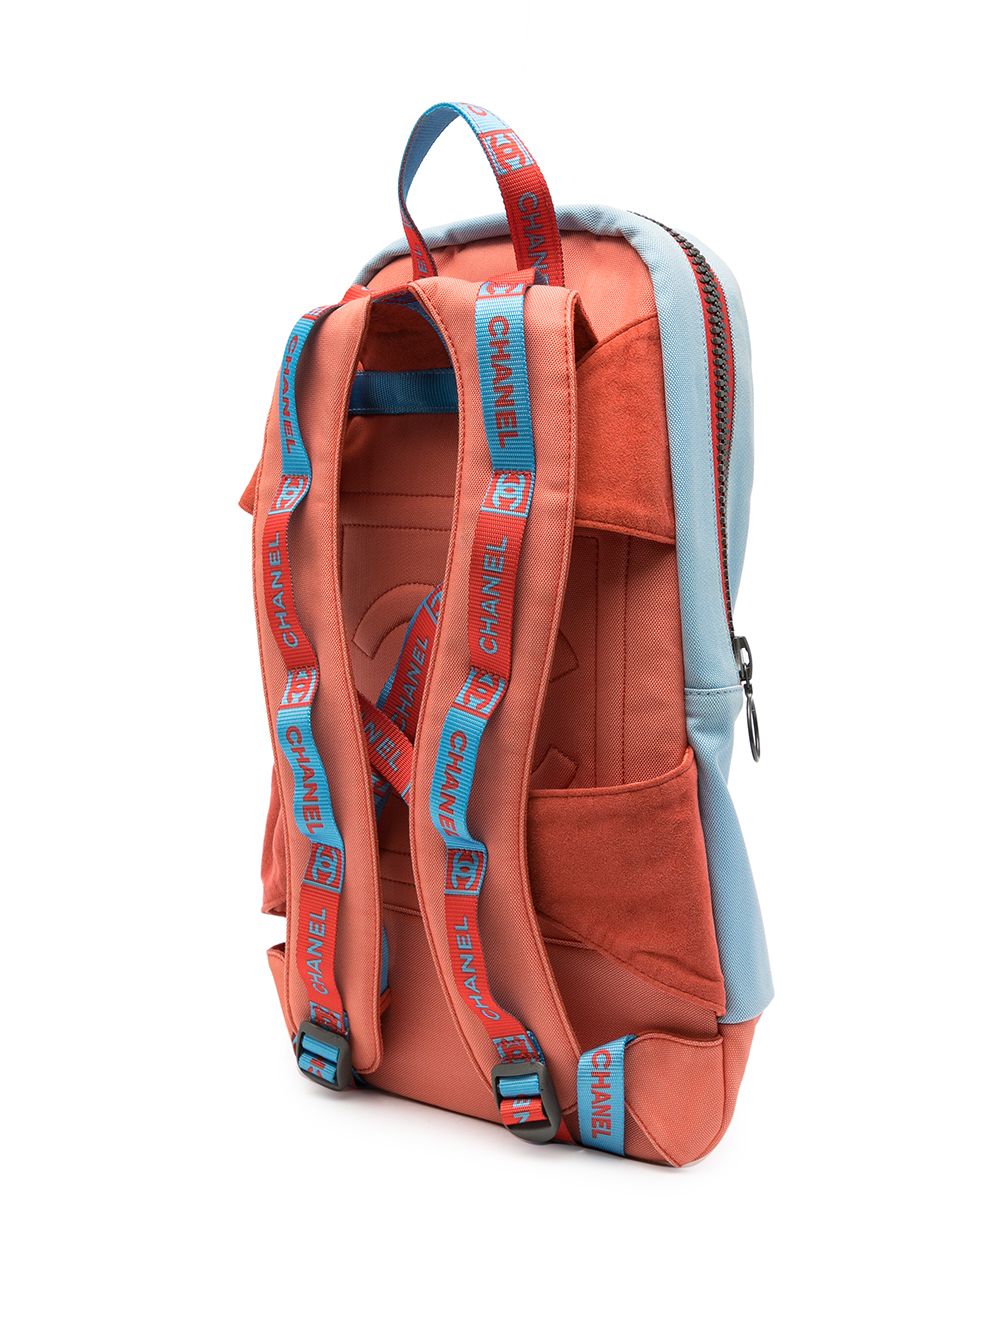 2002 Sport Line panelled backpack